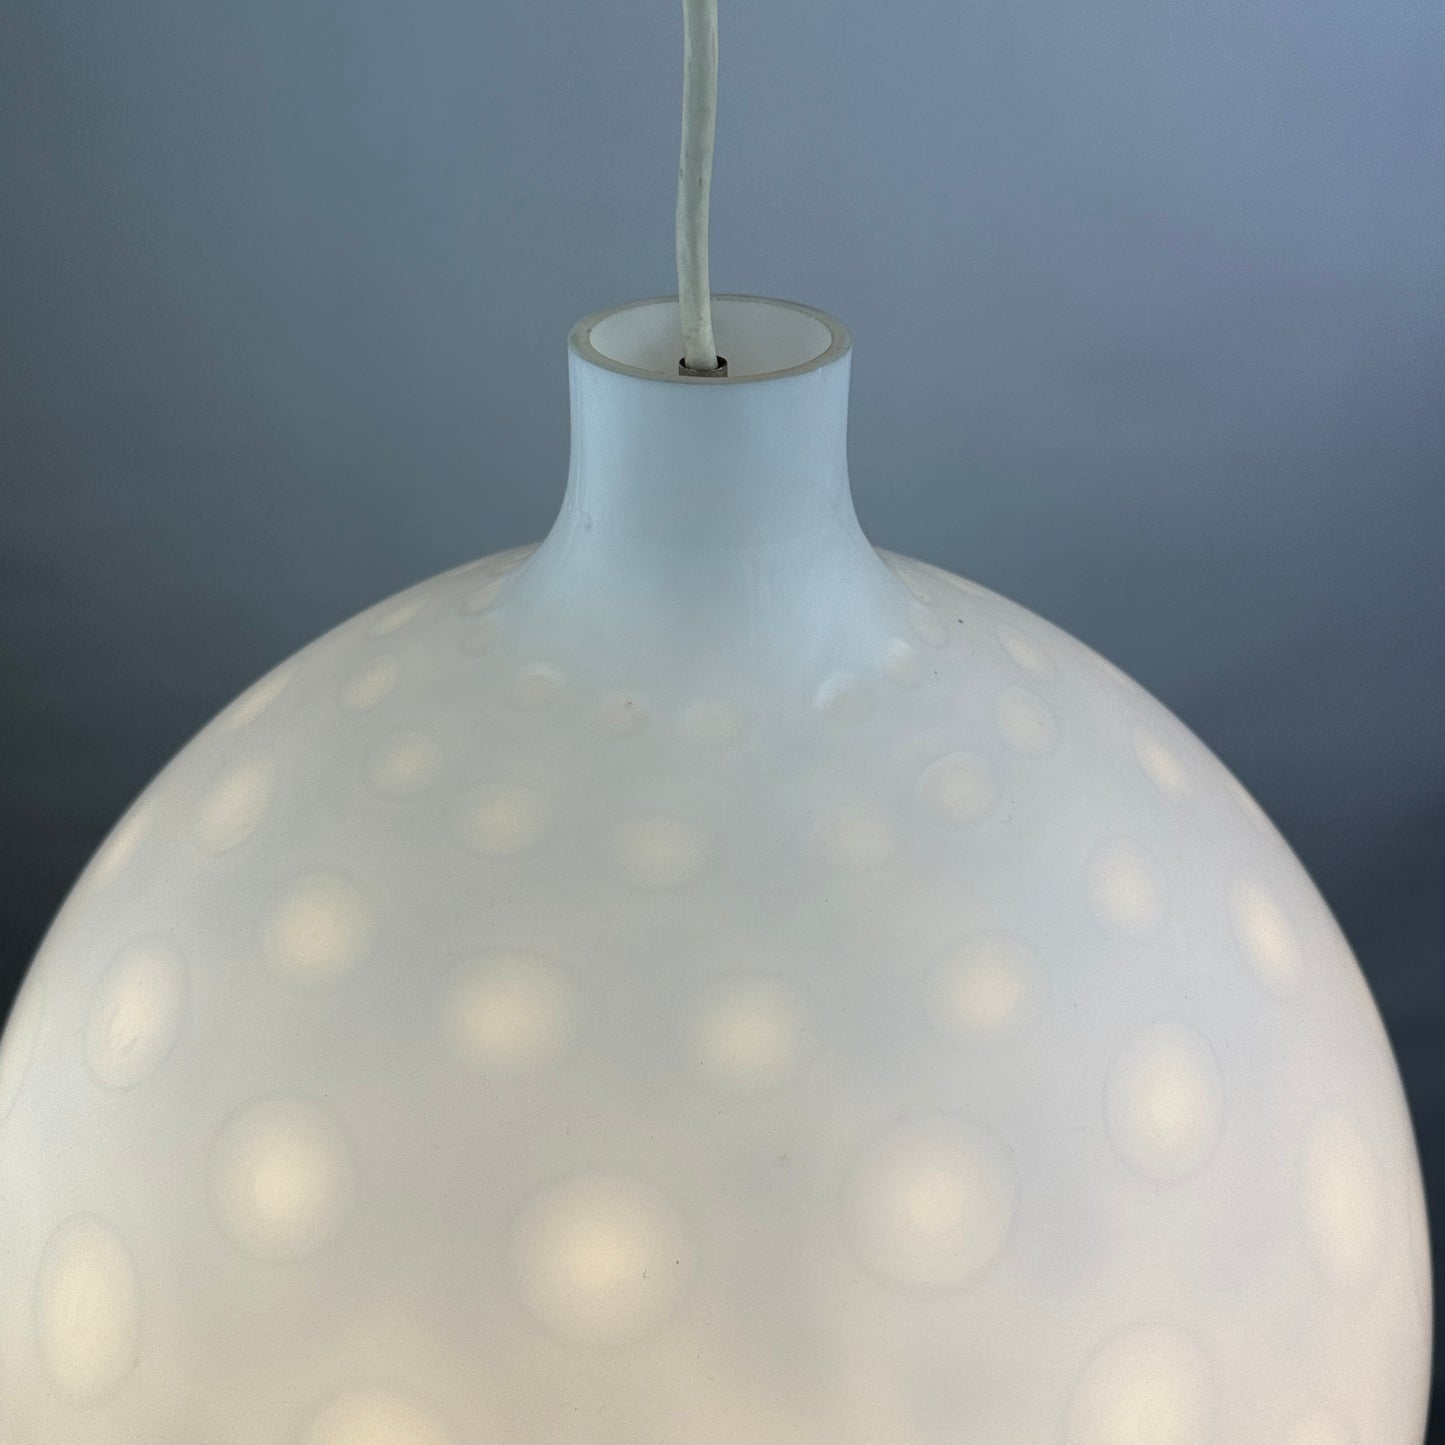 White glass pendant light COMO XL by Aloys Gangkofner for Peill and Putzler 1950